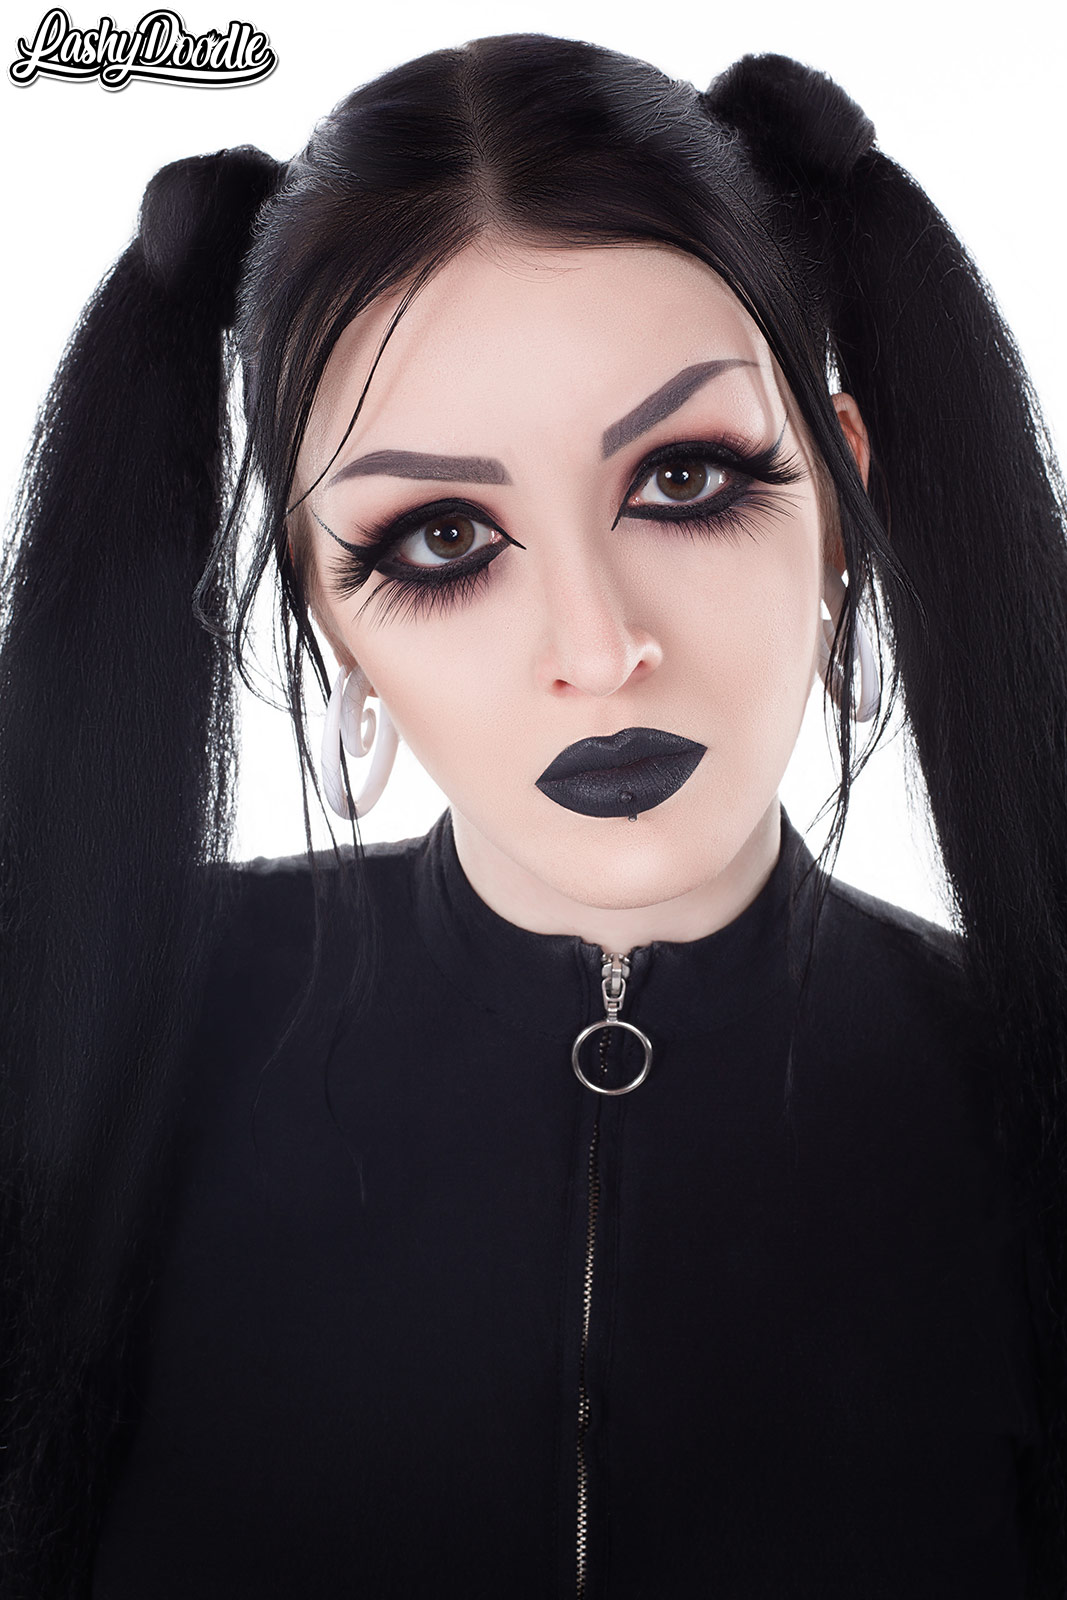 Beautiful goth make-up stock image. Image of lashes, eyes - 13947247